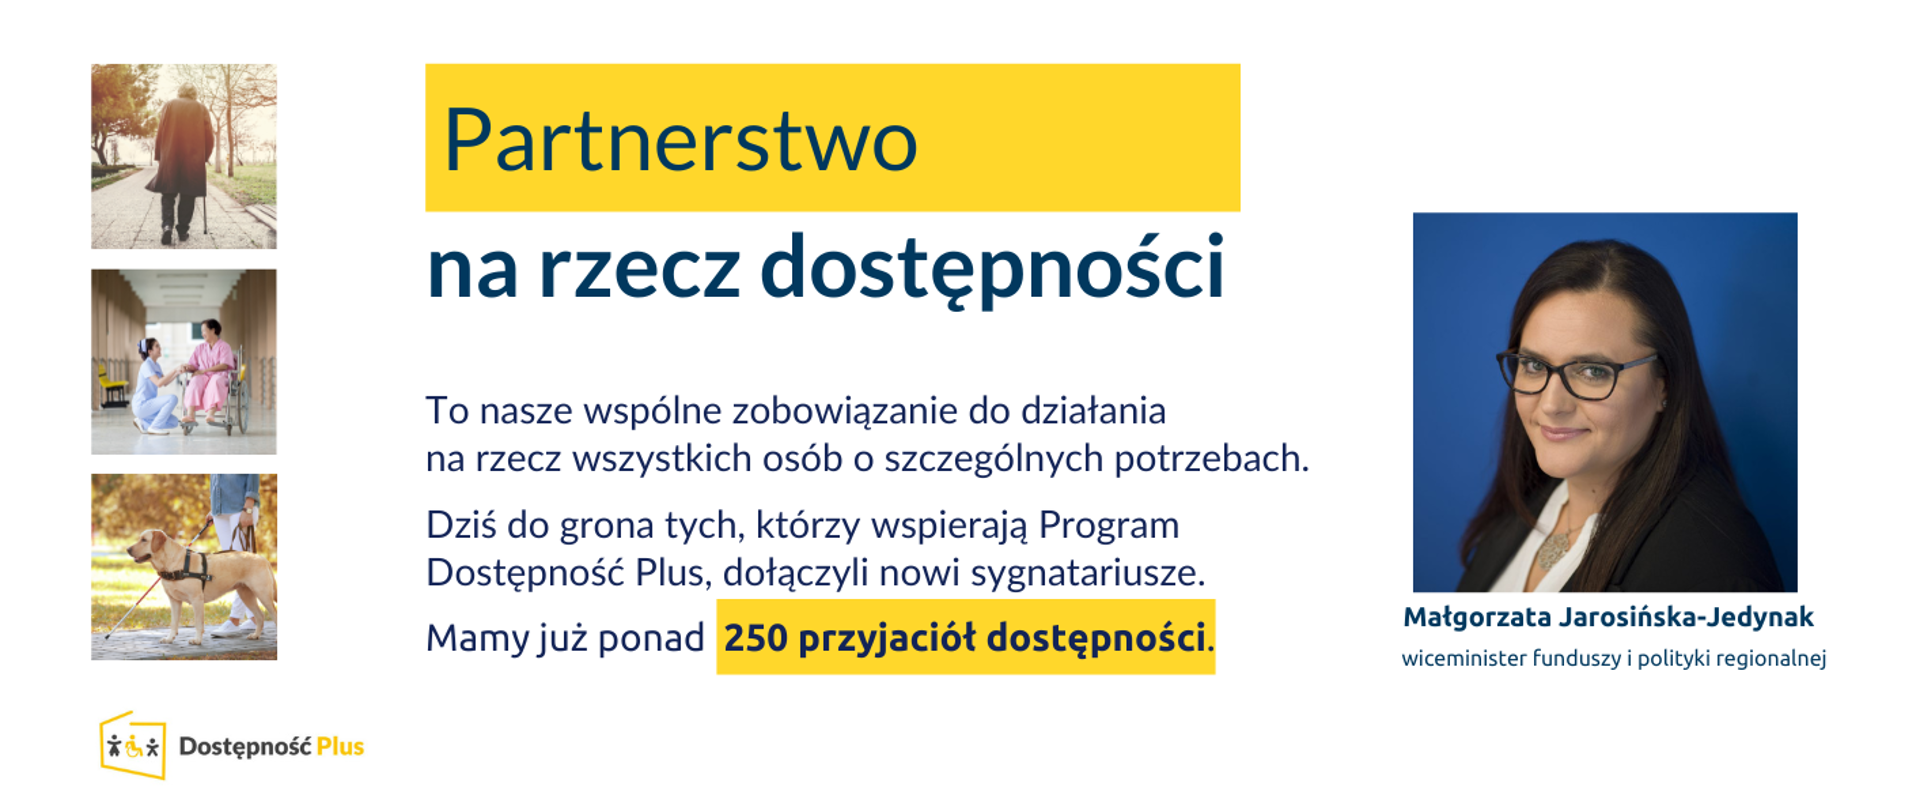 Na grafice zdjęcie portrwtowe wiceminister Małgorzaty Jarosińskiej-Jedynak, zdjęcia stockowe z zakresu dostępności oraz napis: "Partnerstwo na rzecz dostępności to nasze wspólne zobowiązanie do działania na rzecz wszystkich osób o szczególnych potrzebach. Dziś do grona tych, którzy wspierają Program Dostępność Plus, dołączyli nowi sygnatariusze. Mamy już ponad 250 przyjaciół dostępności.